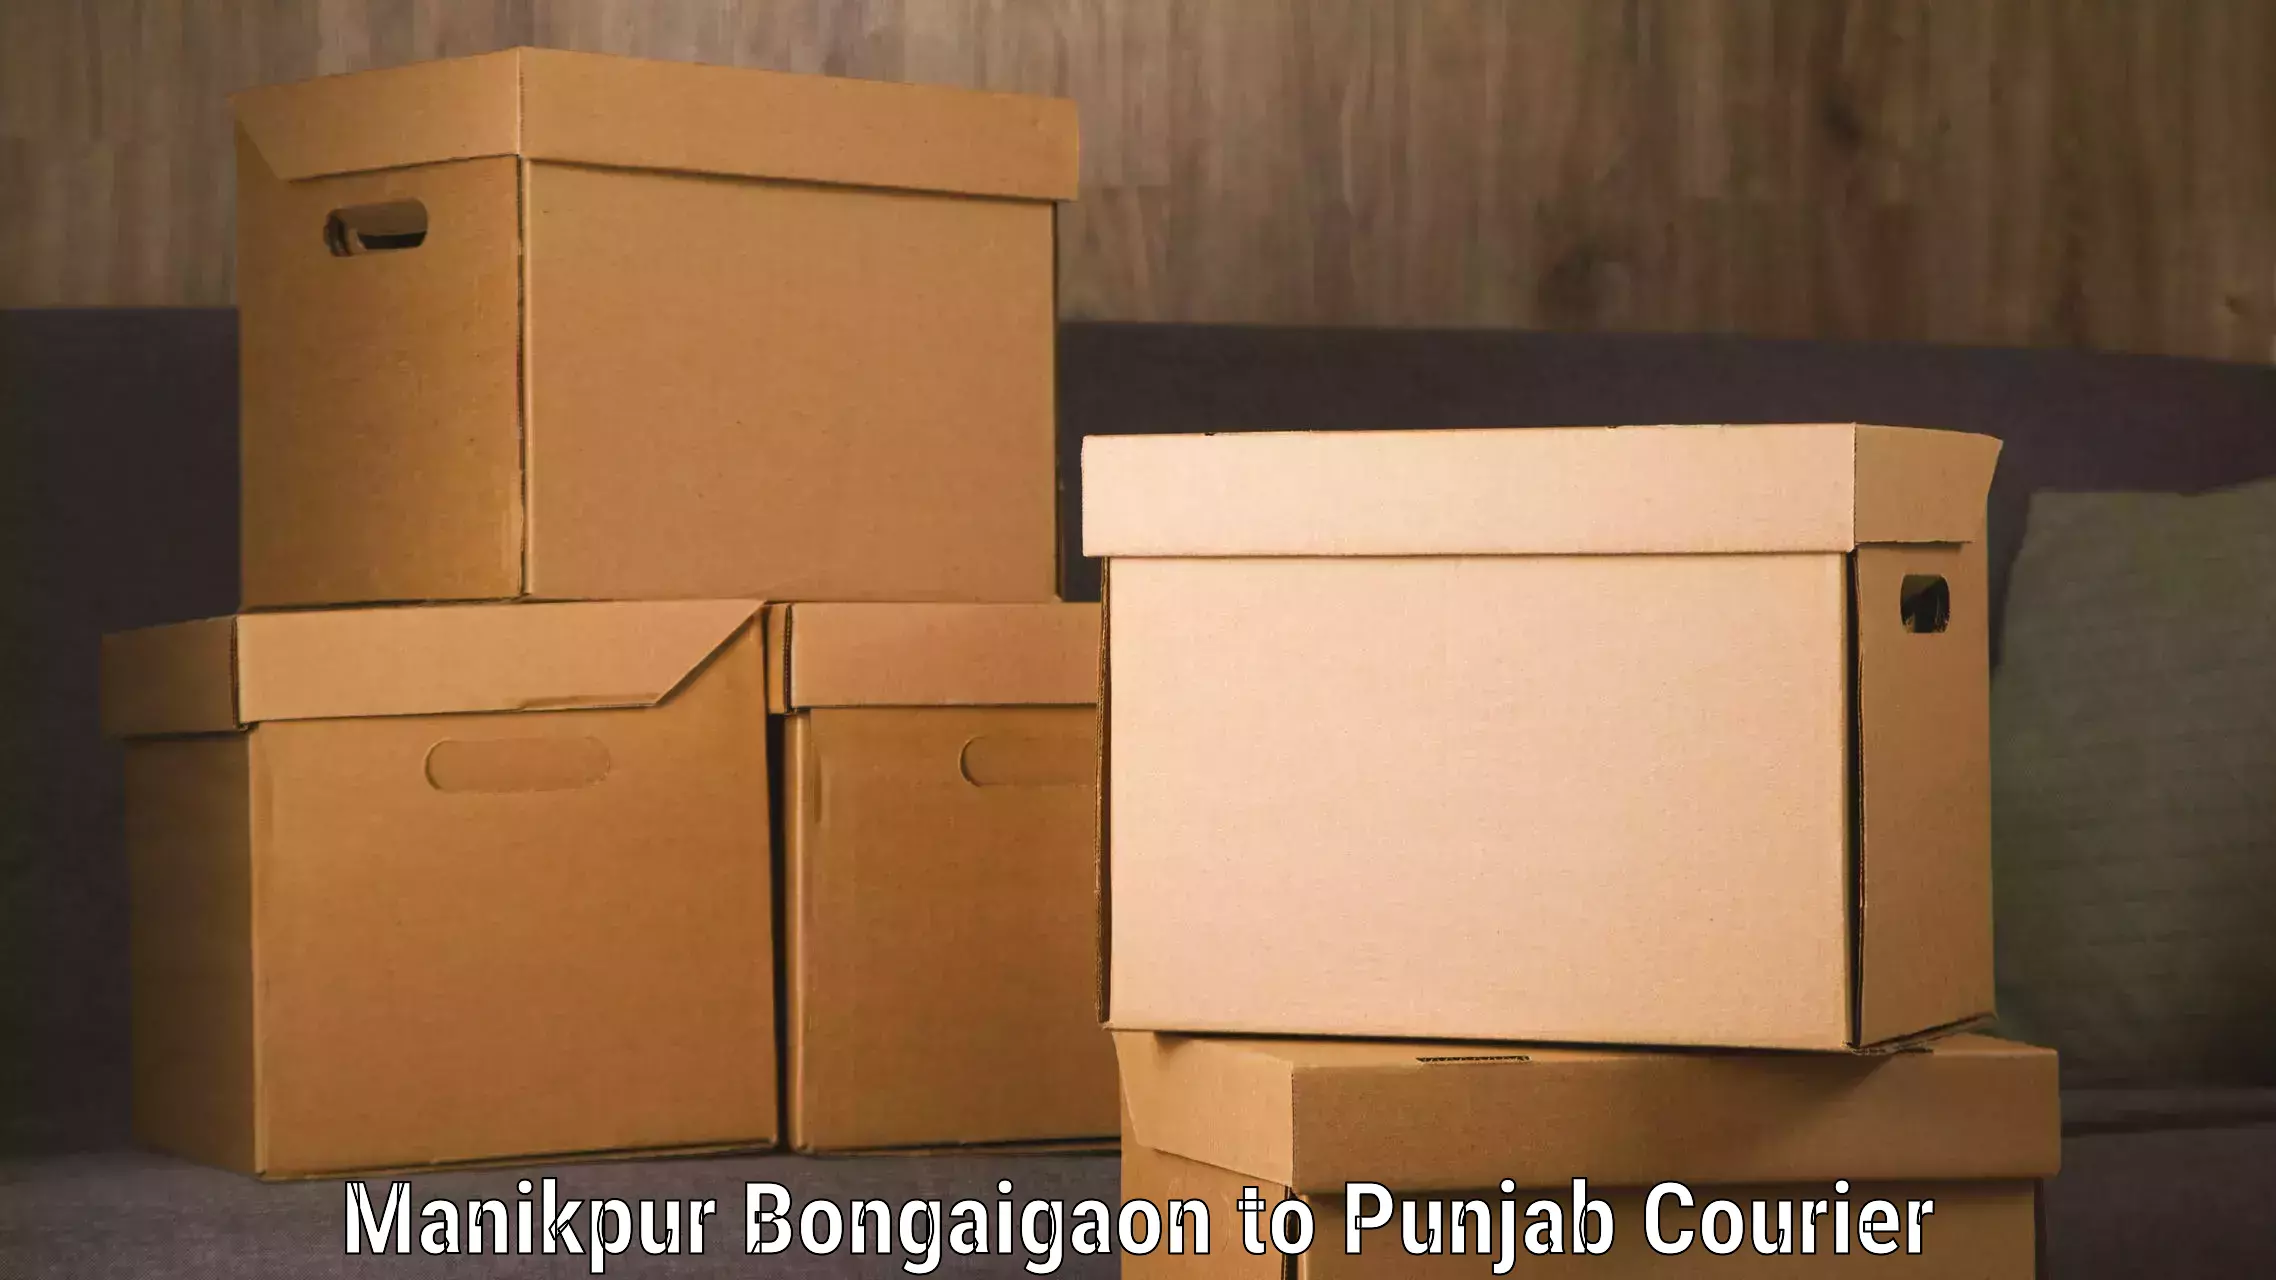 Baggage transport services Manikpur Bongaigaon to Ajnala